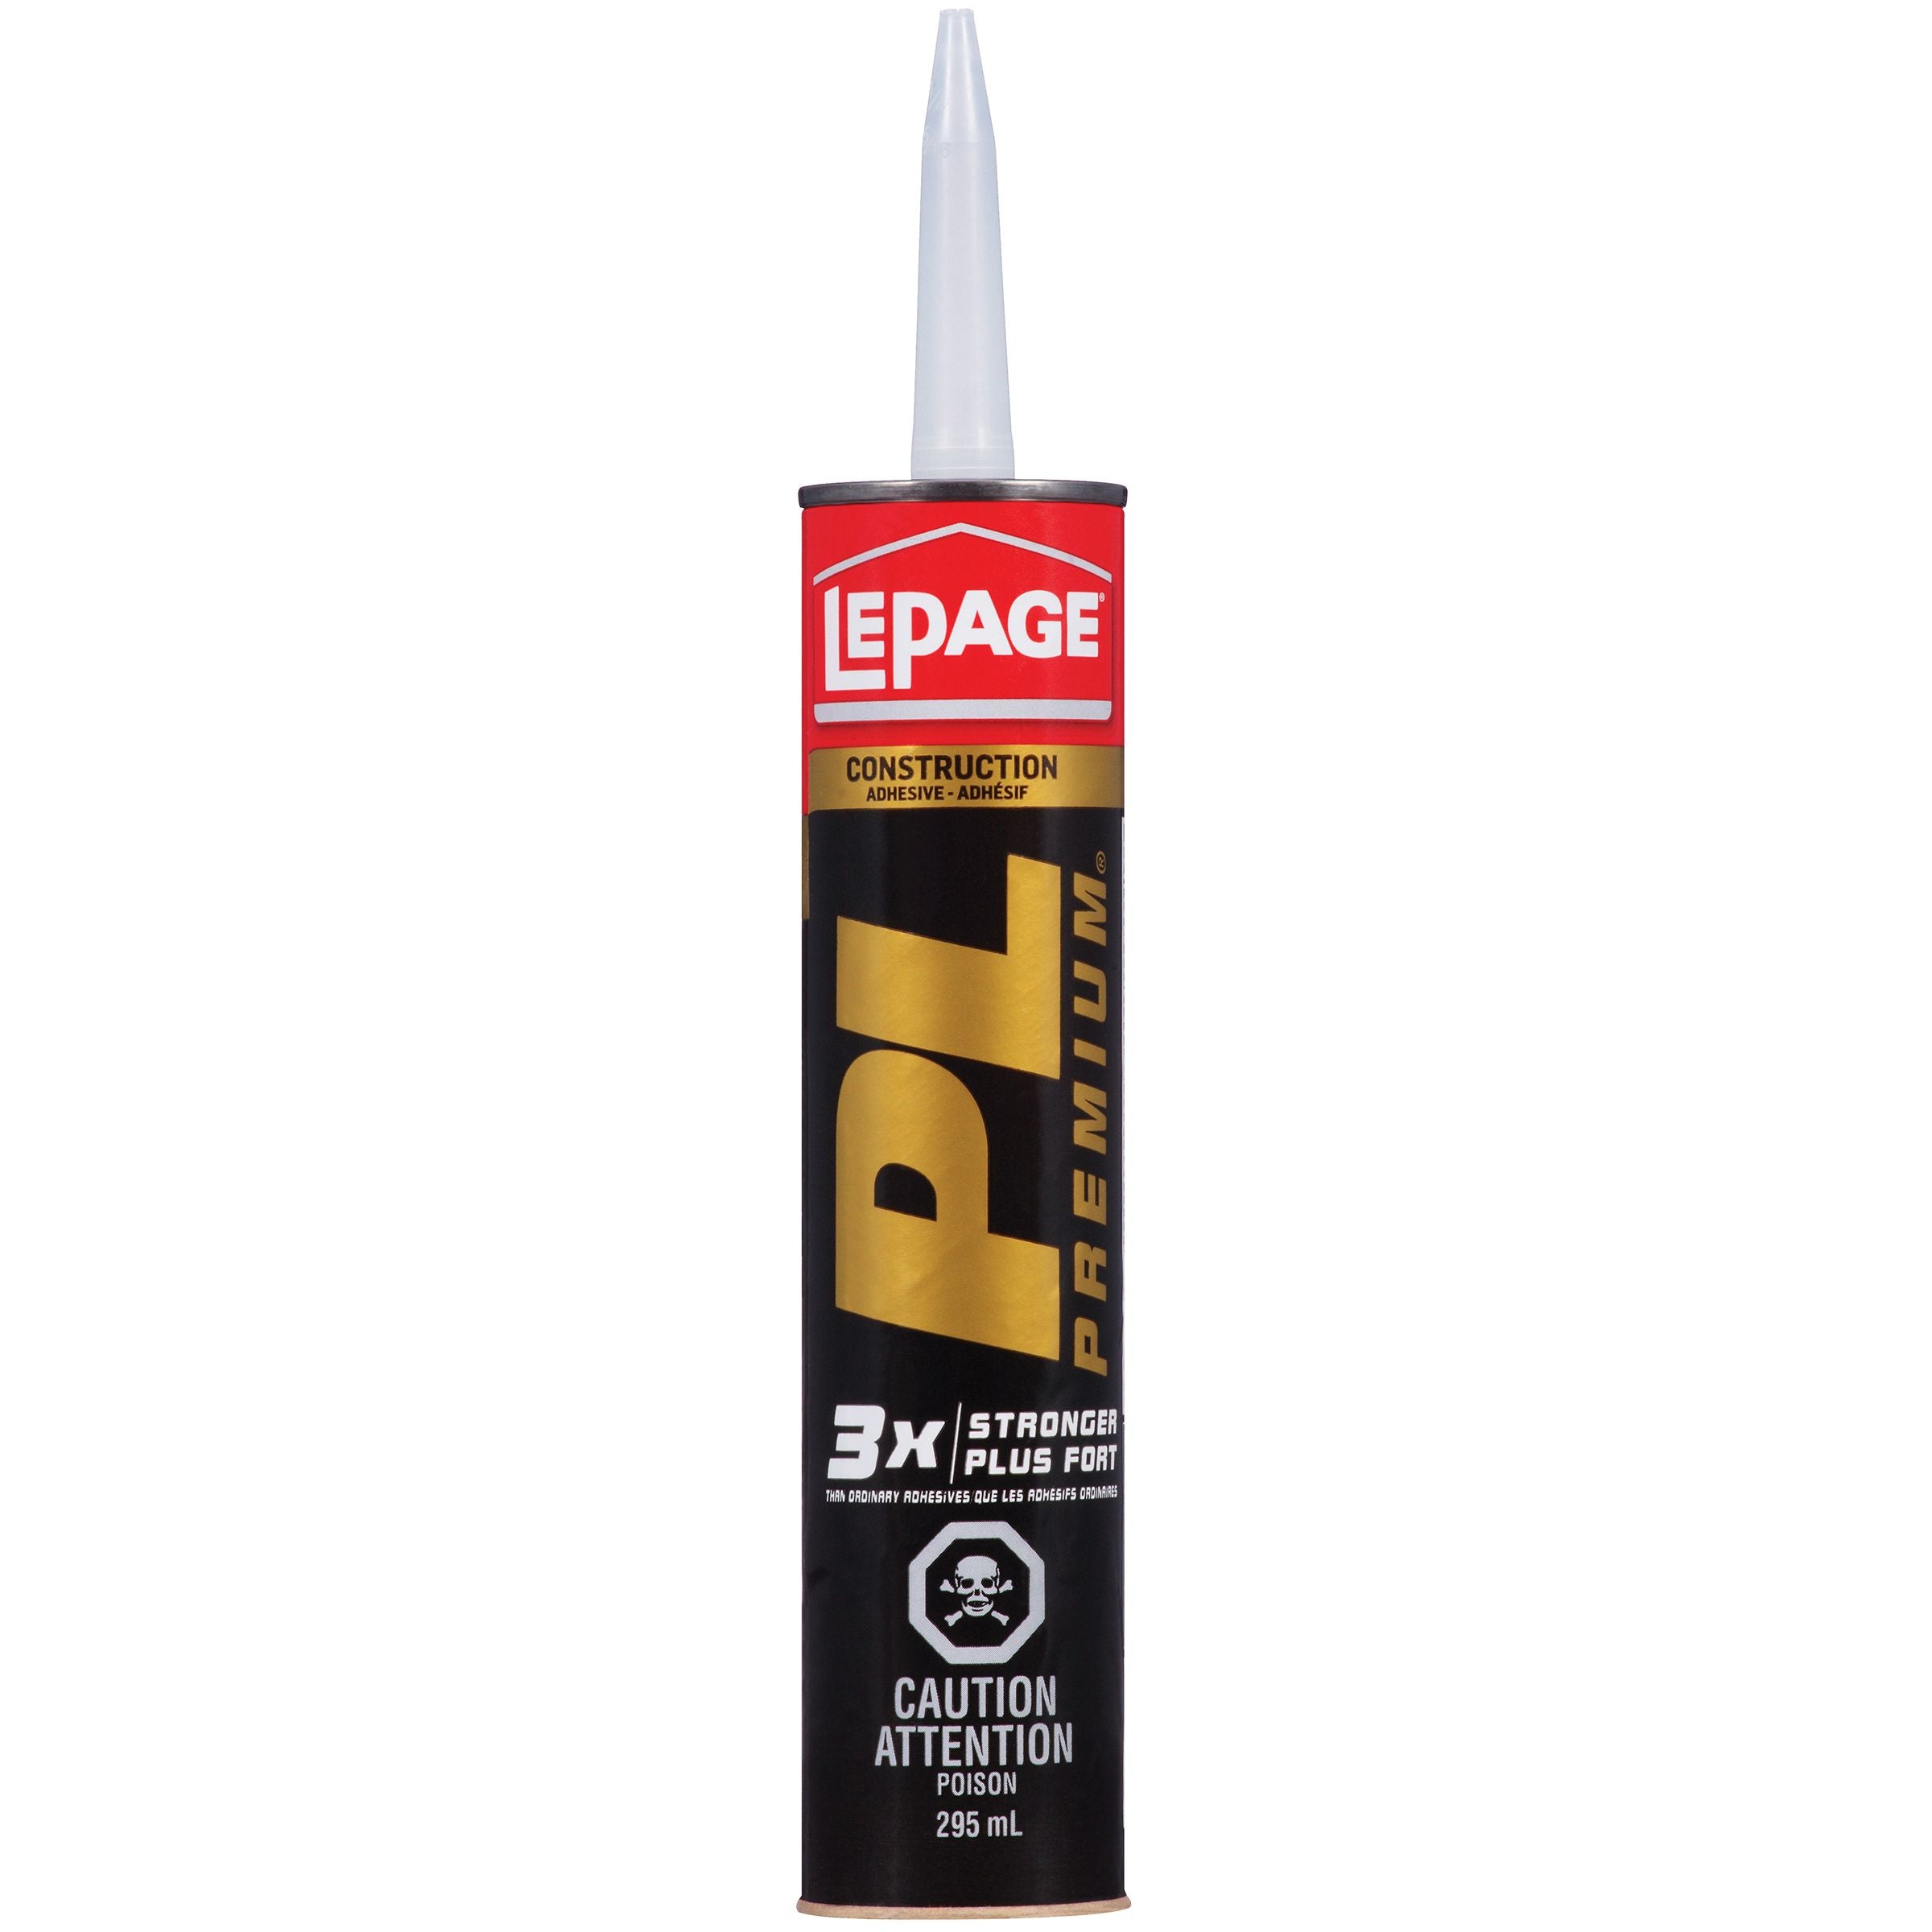 LePage PL Premium Adhesive, Tan, 295 ml Cartridge, Pack of 1